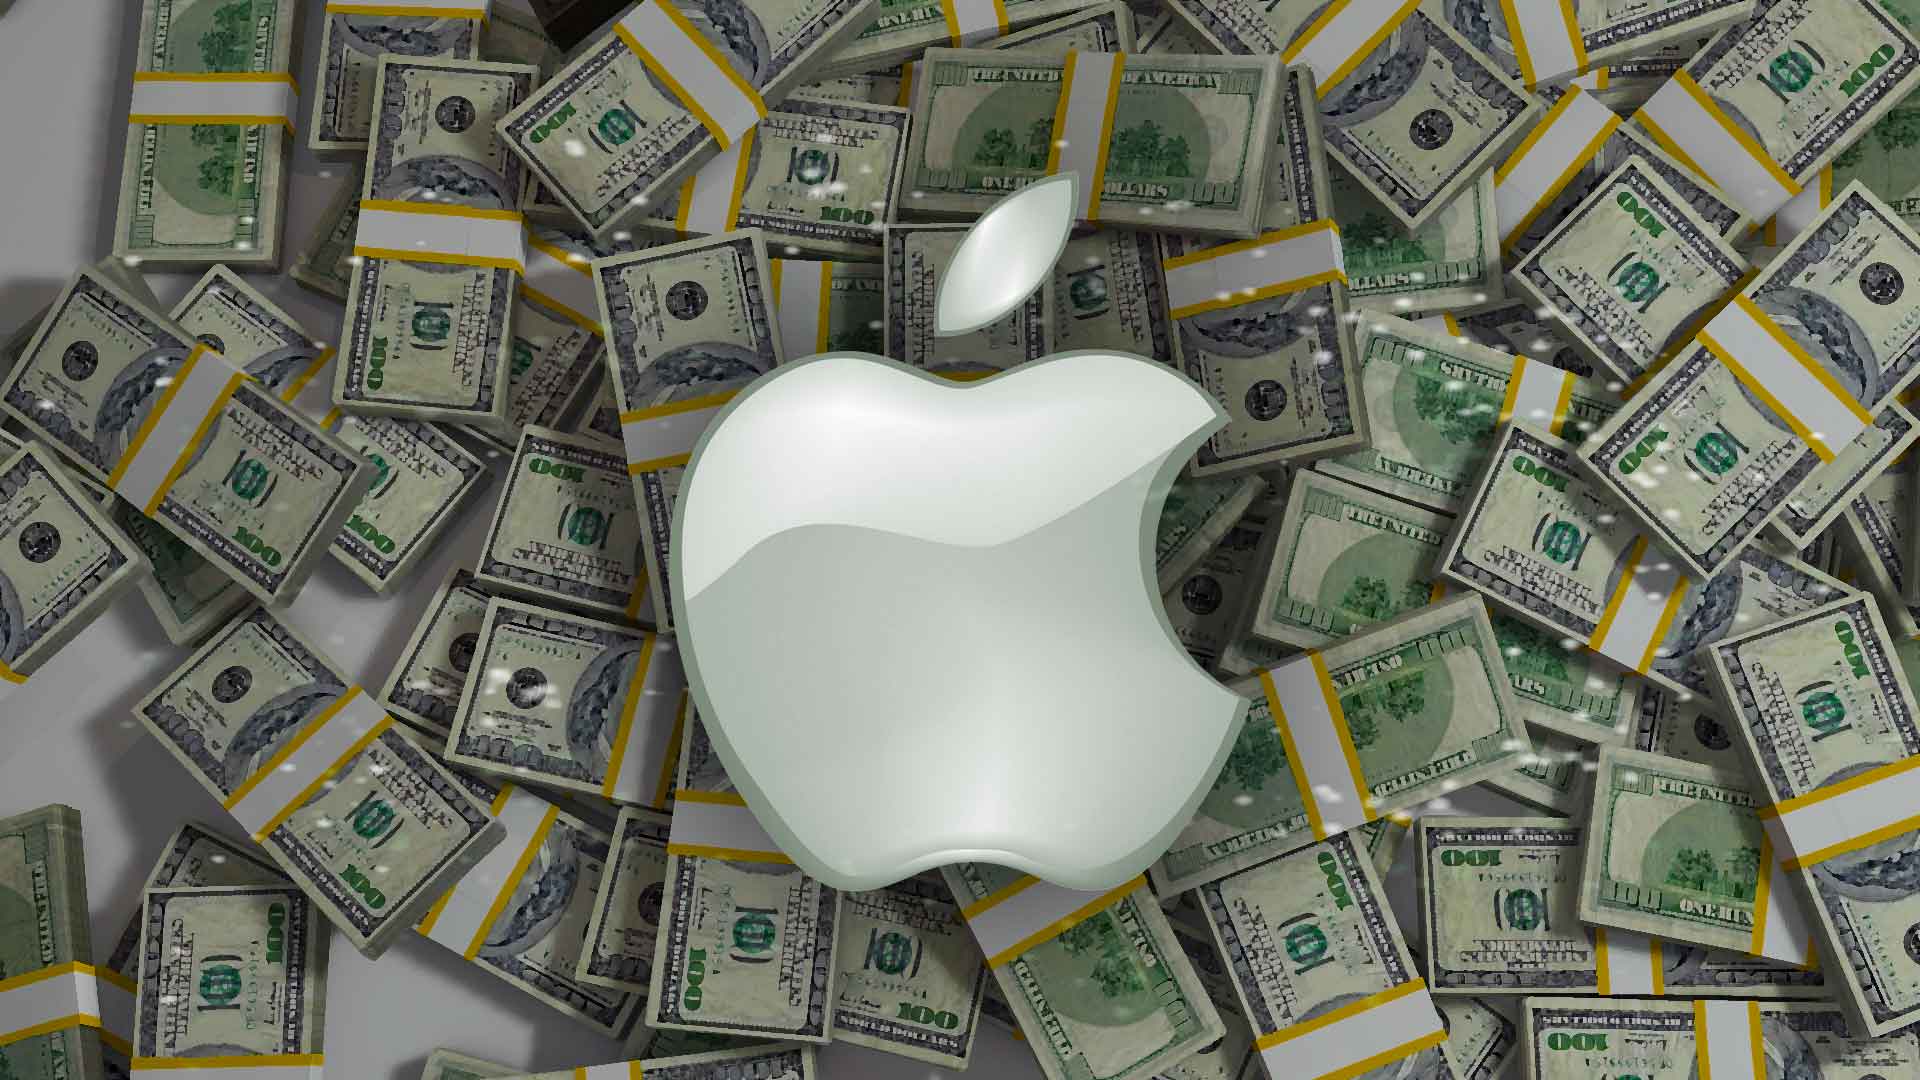 Этот день в истории Apple: убыточный квартал доказал, что Стив Джобс не всесилен